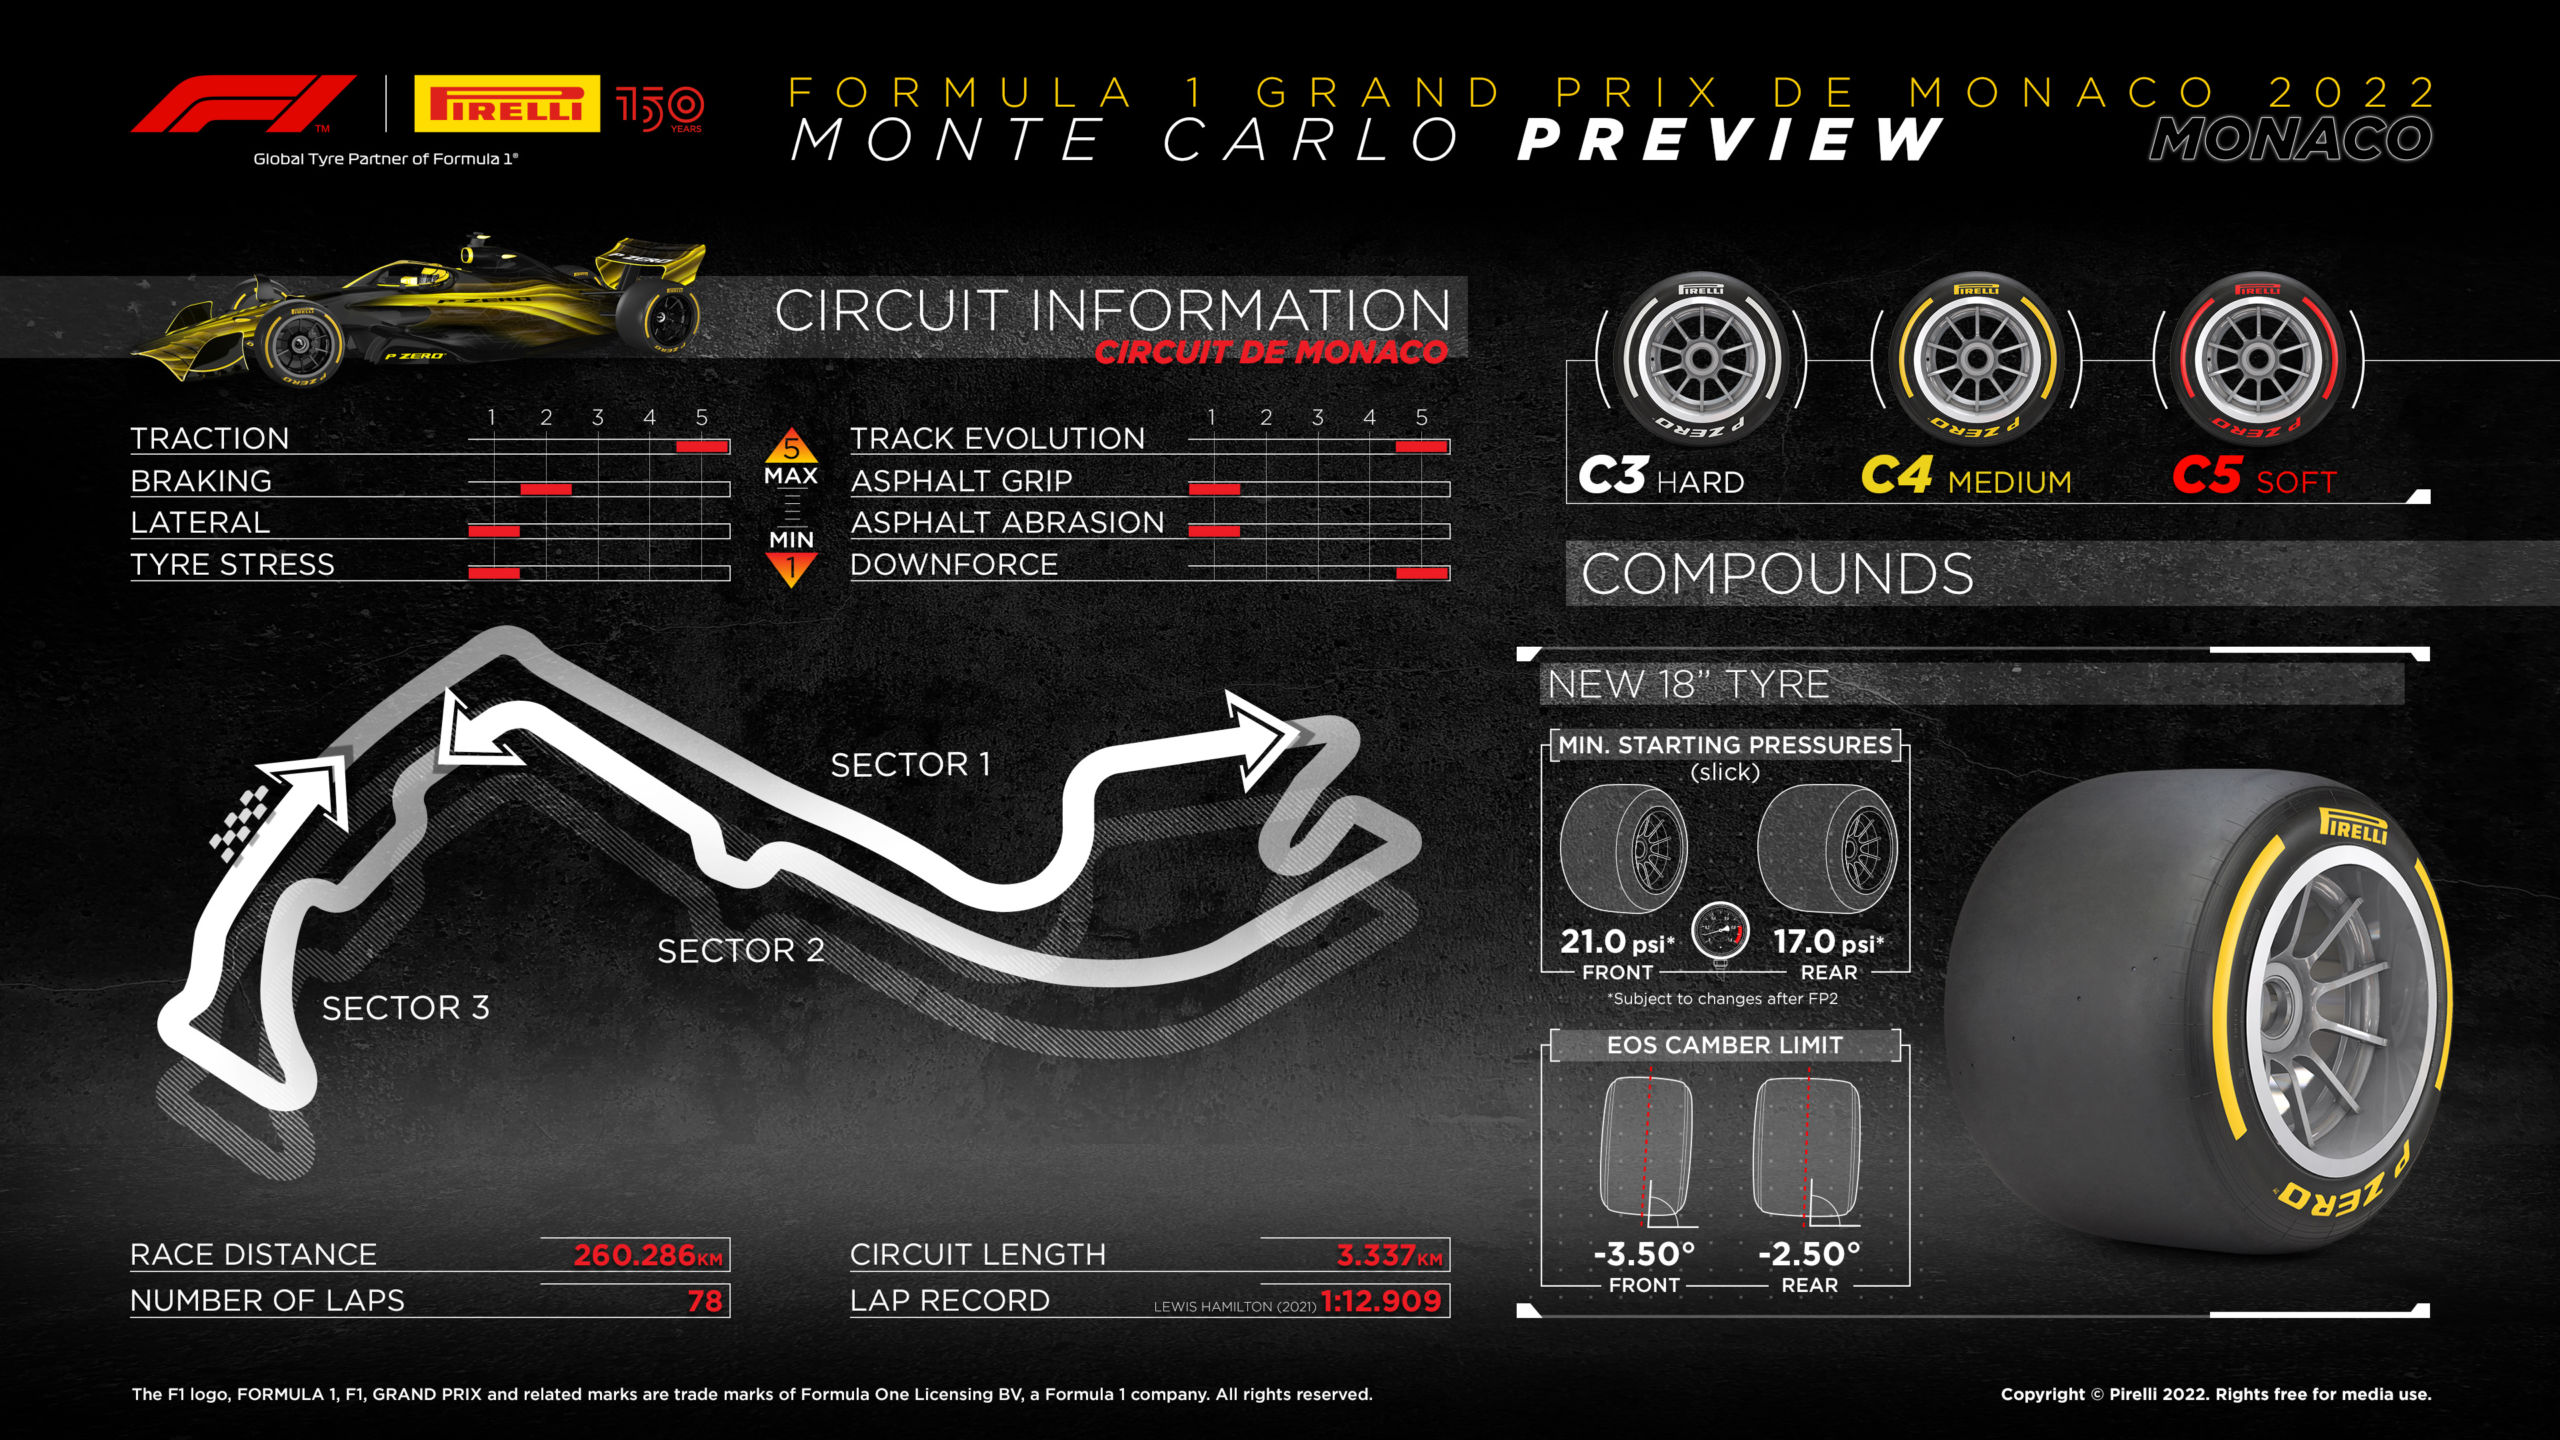 2022 Monaco Grand Prix Tyre Compounds